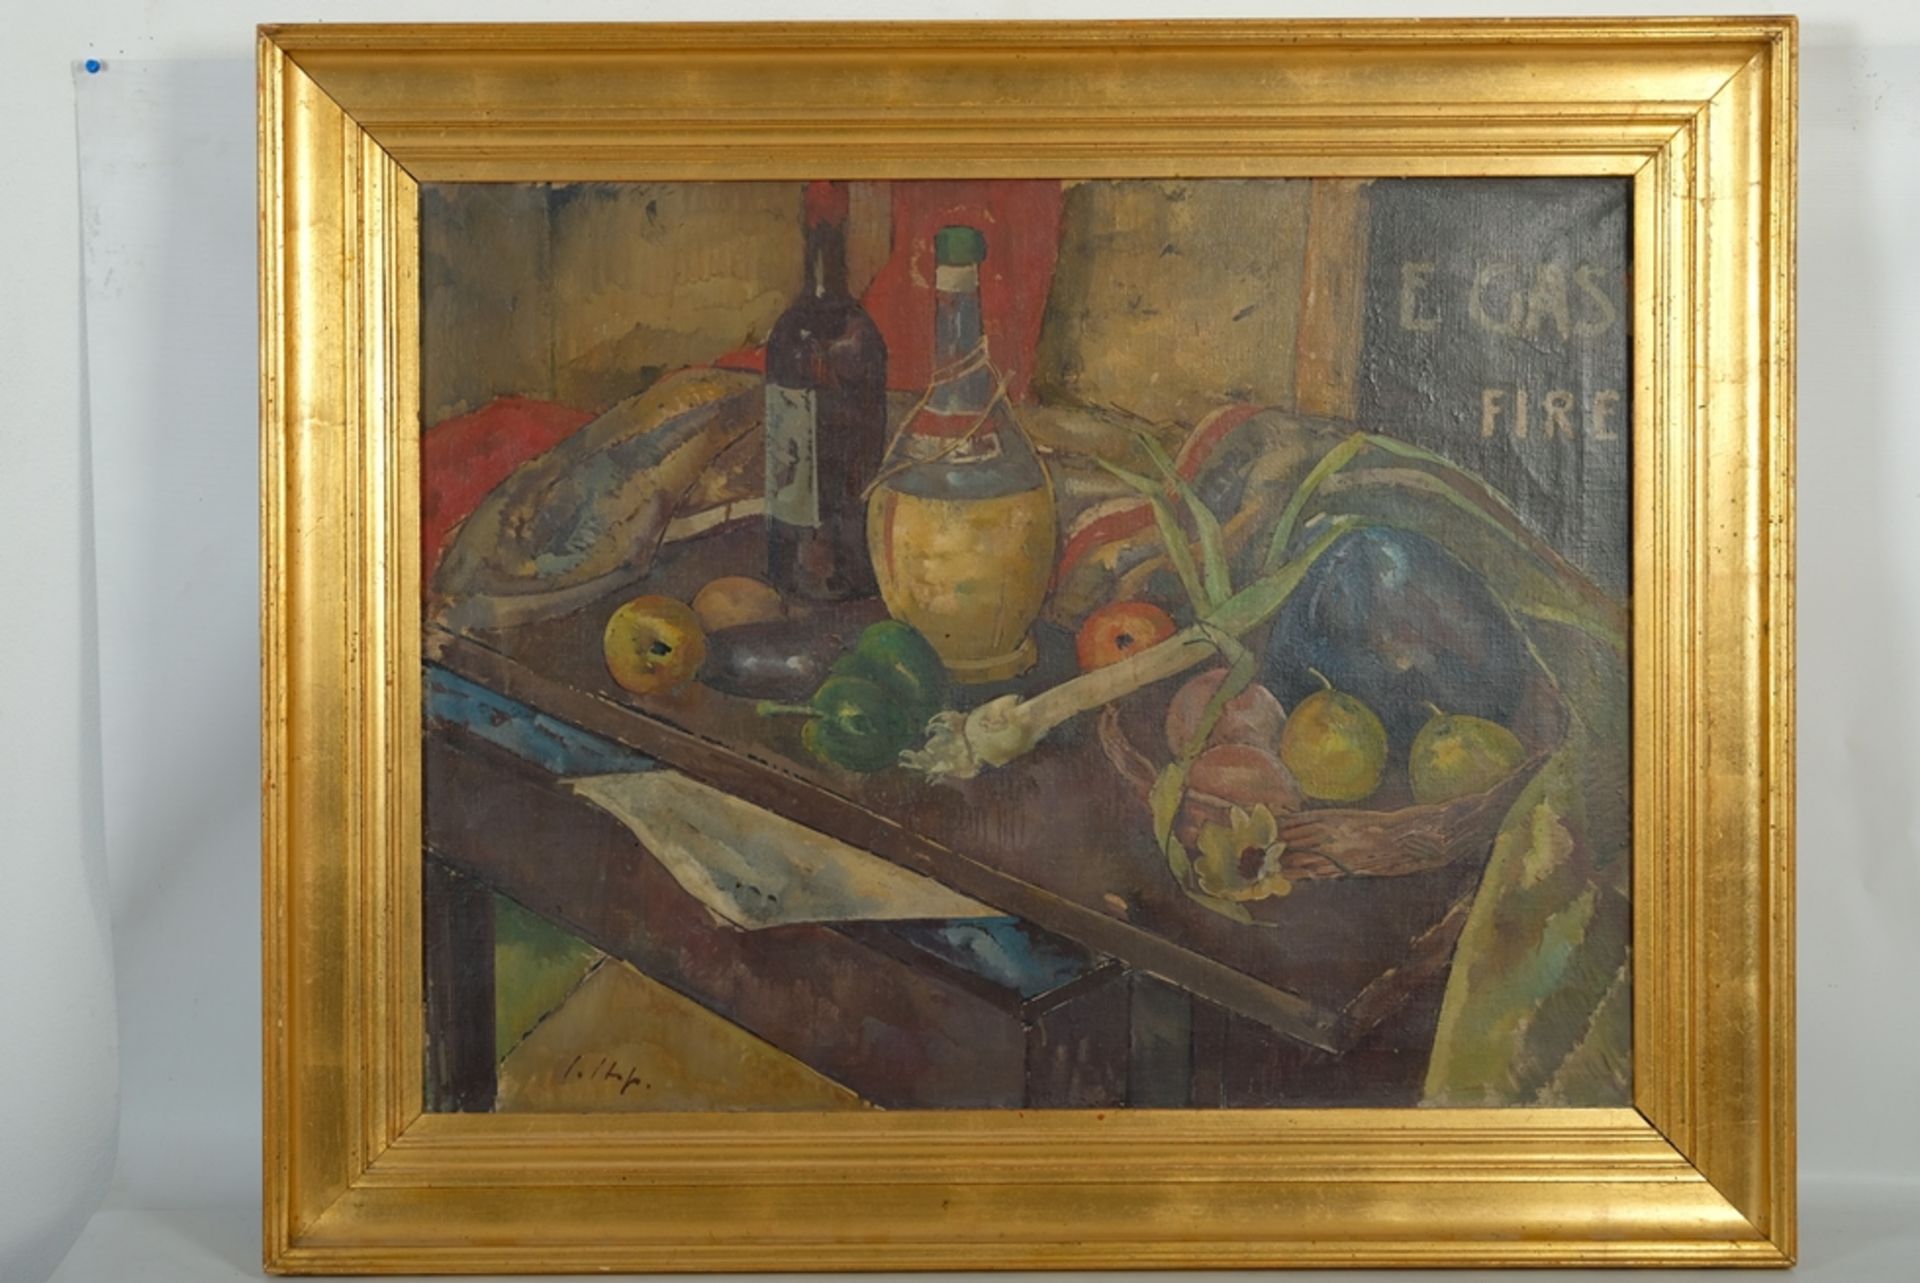 Hess, Julius (1878-1957) "Stillleben" mit Obst, Gemüse und Wein, leicht abstrahierte Darstellung.